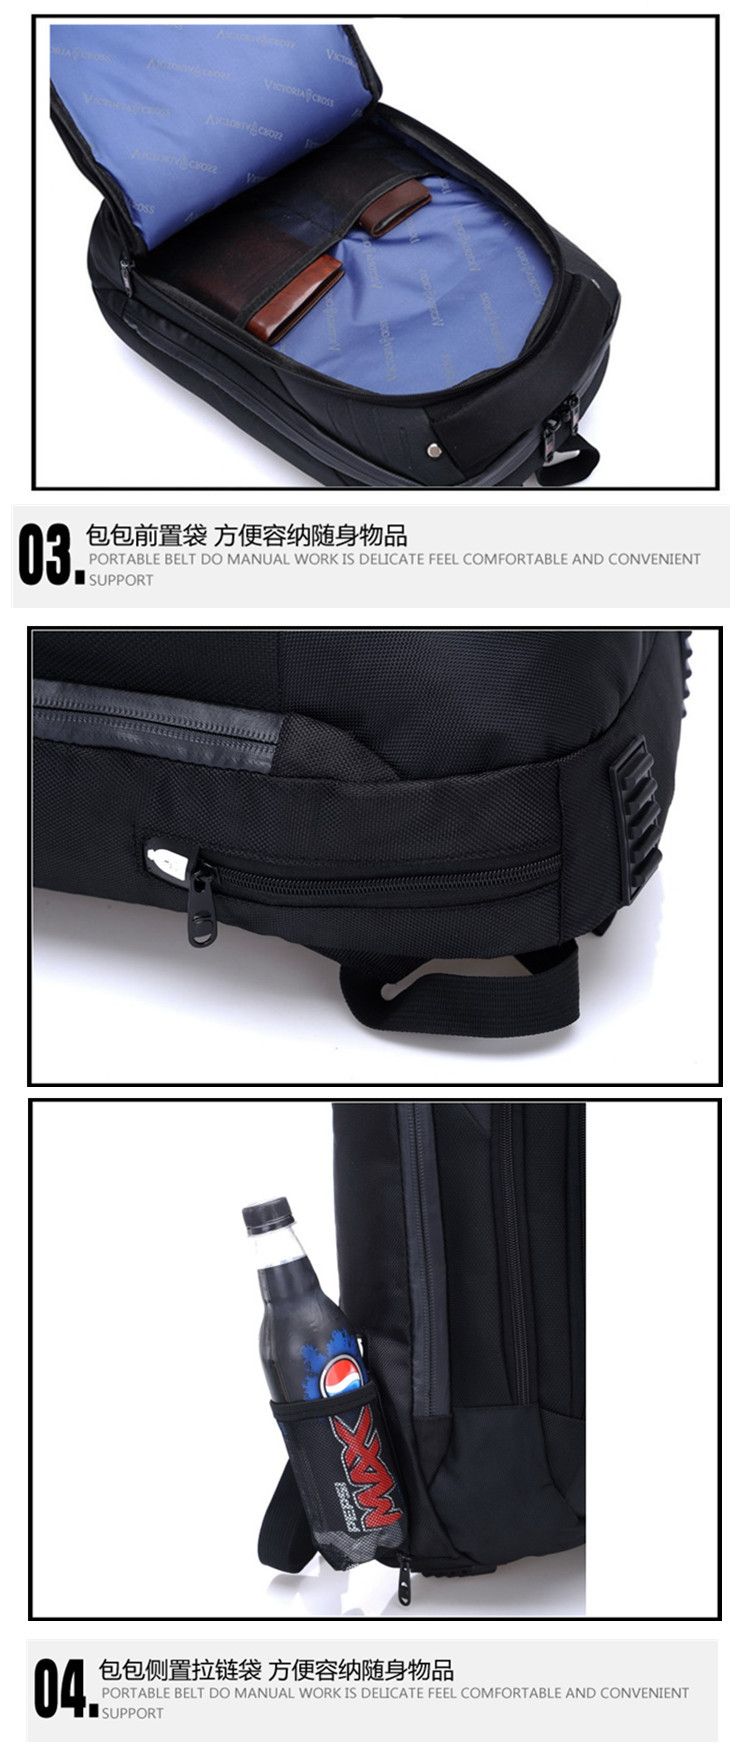  厂家直销14-15寸手提笔记本双背包商务休闲电脑包可定制详情11